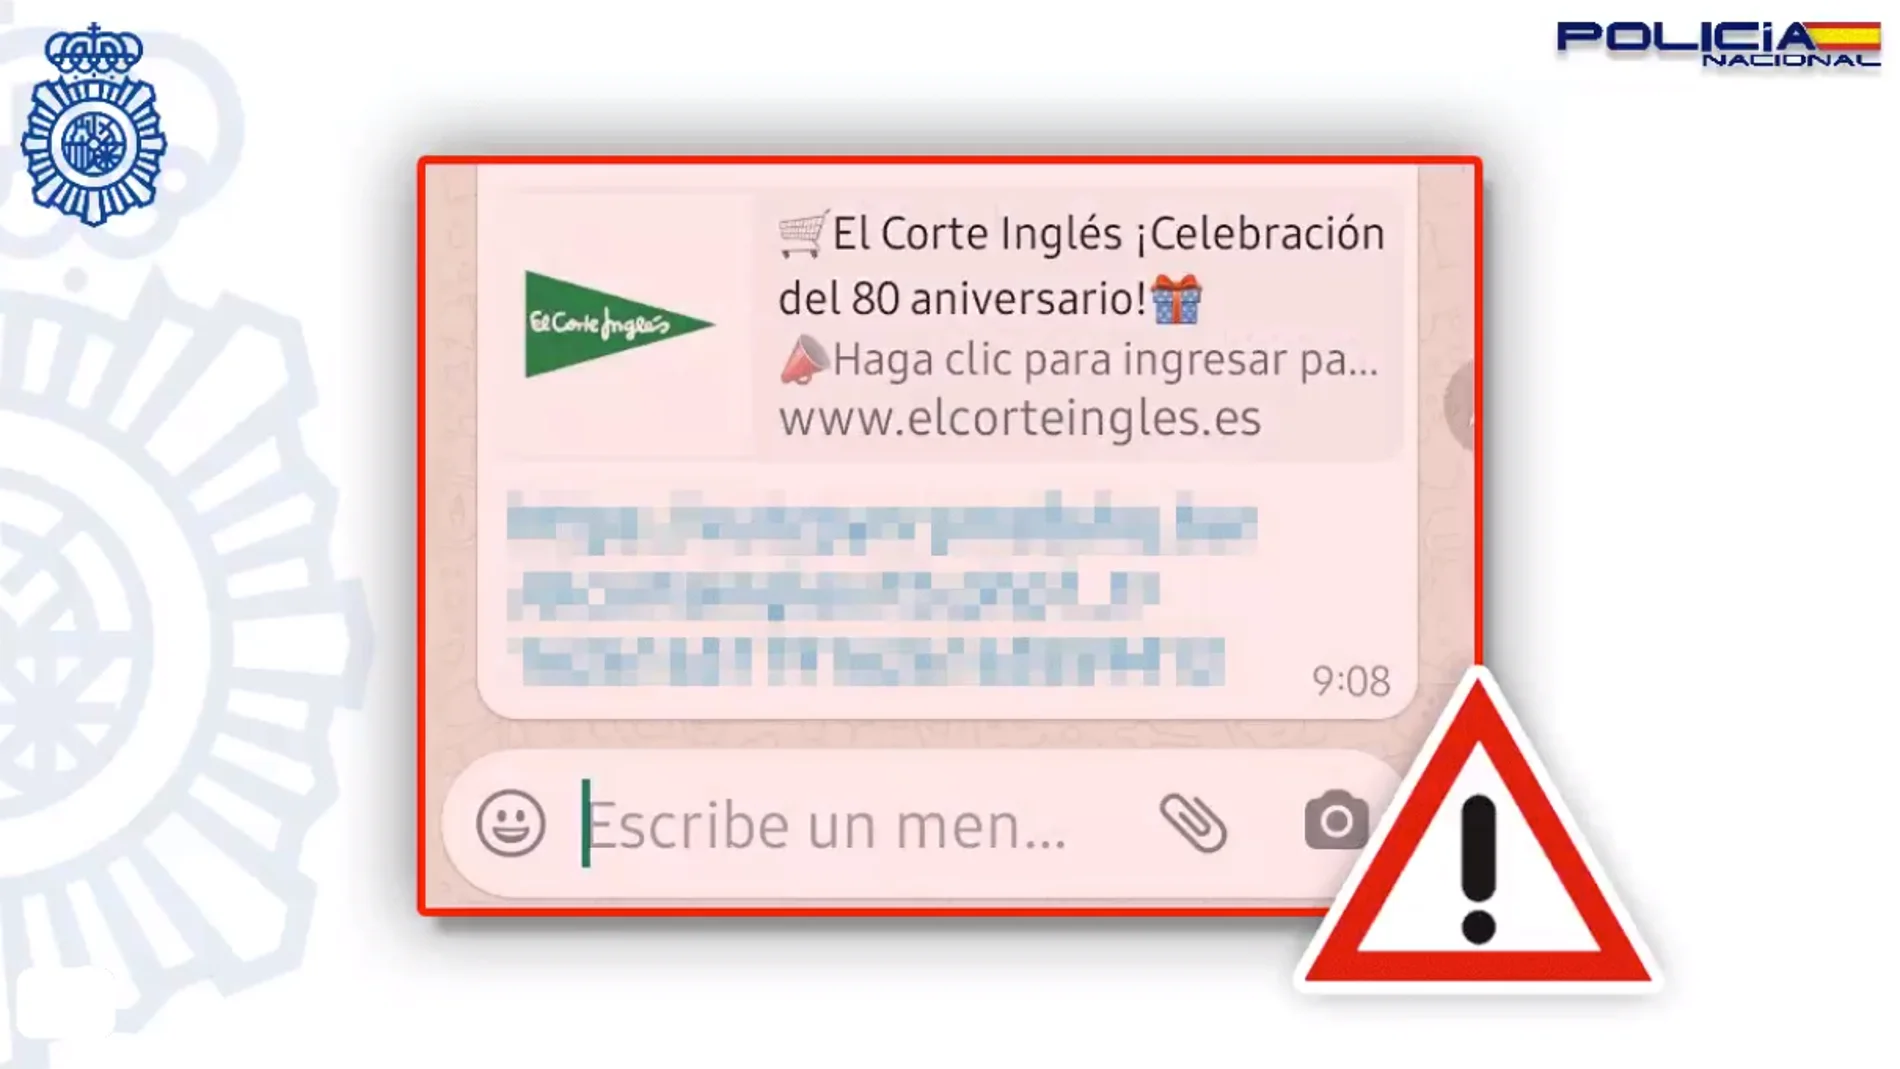 Atención a los mensajes de WhatsApp anunciando tarjetas regalo de 500 euros de El Corte Inglés y Alcampo: es una estafa